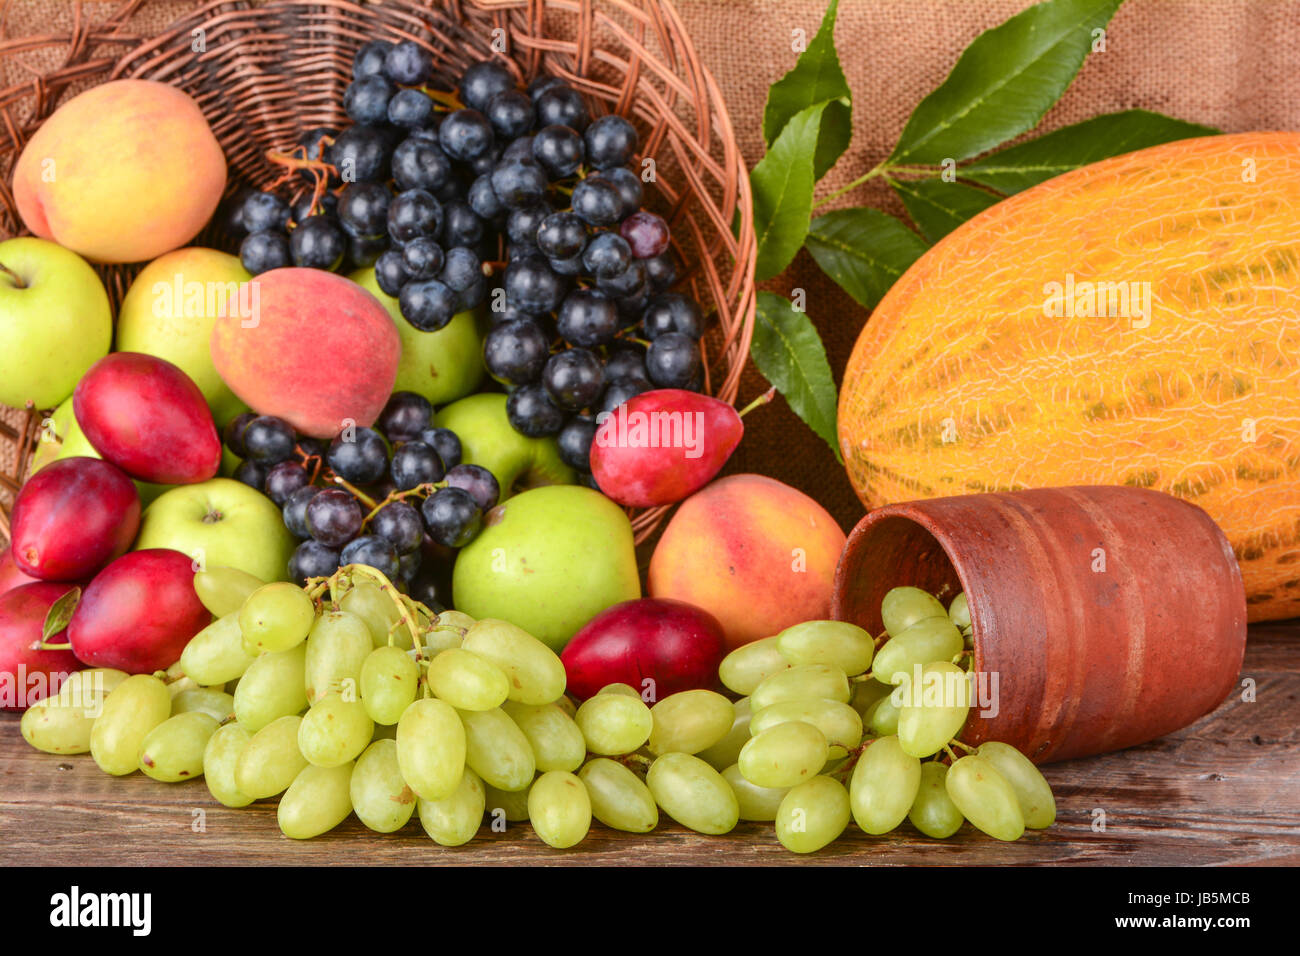 Mescolati con la frutta di stagione, cibo sano Foto Stock